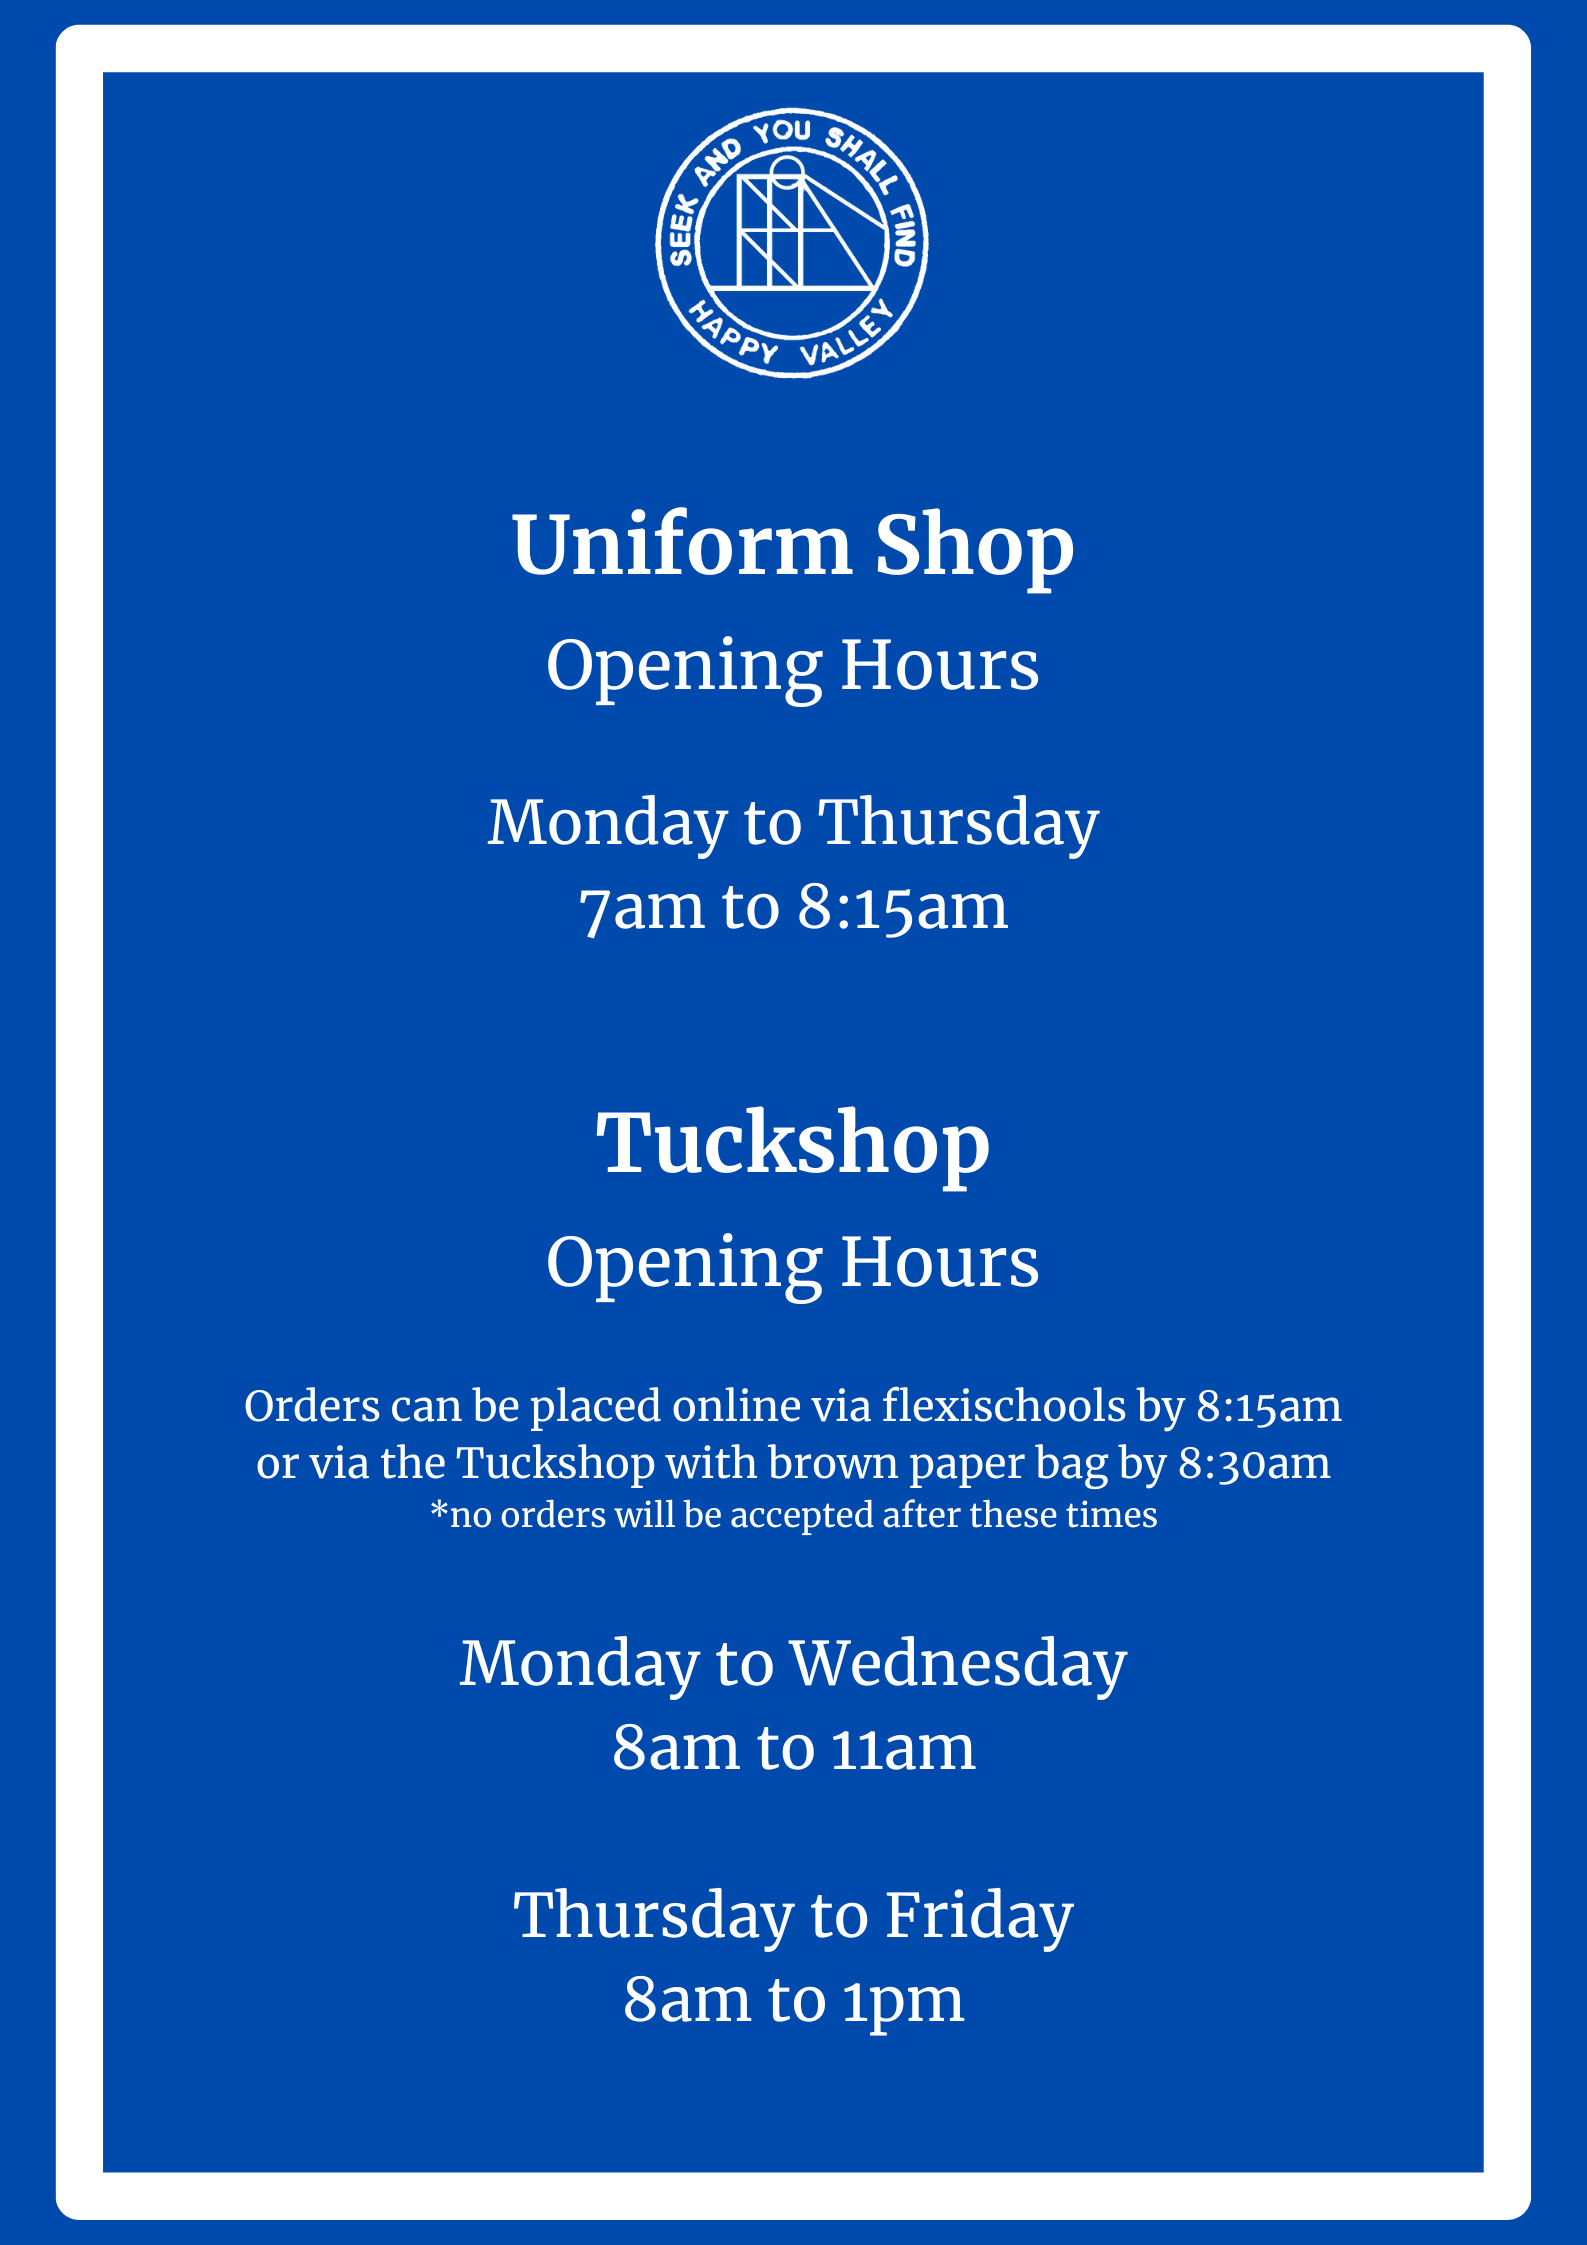 Uniform Shop And Tuckshop